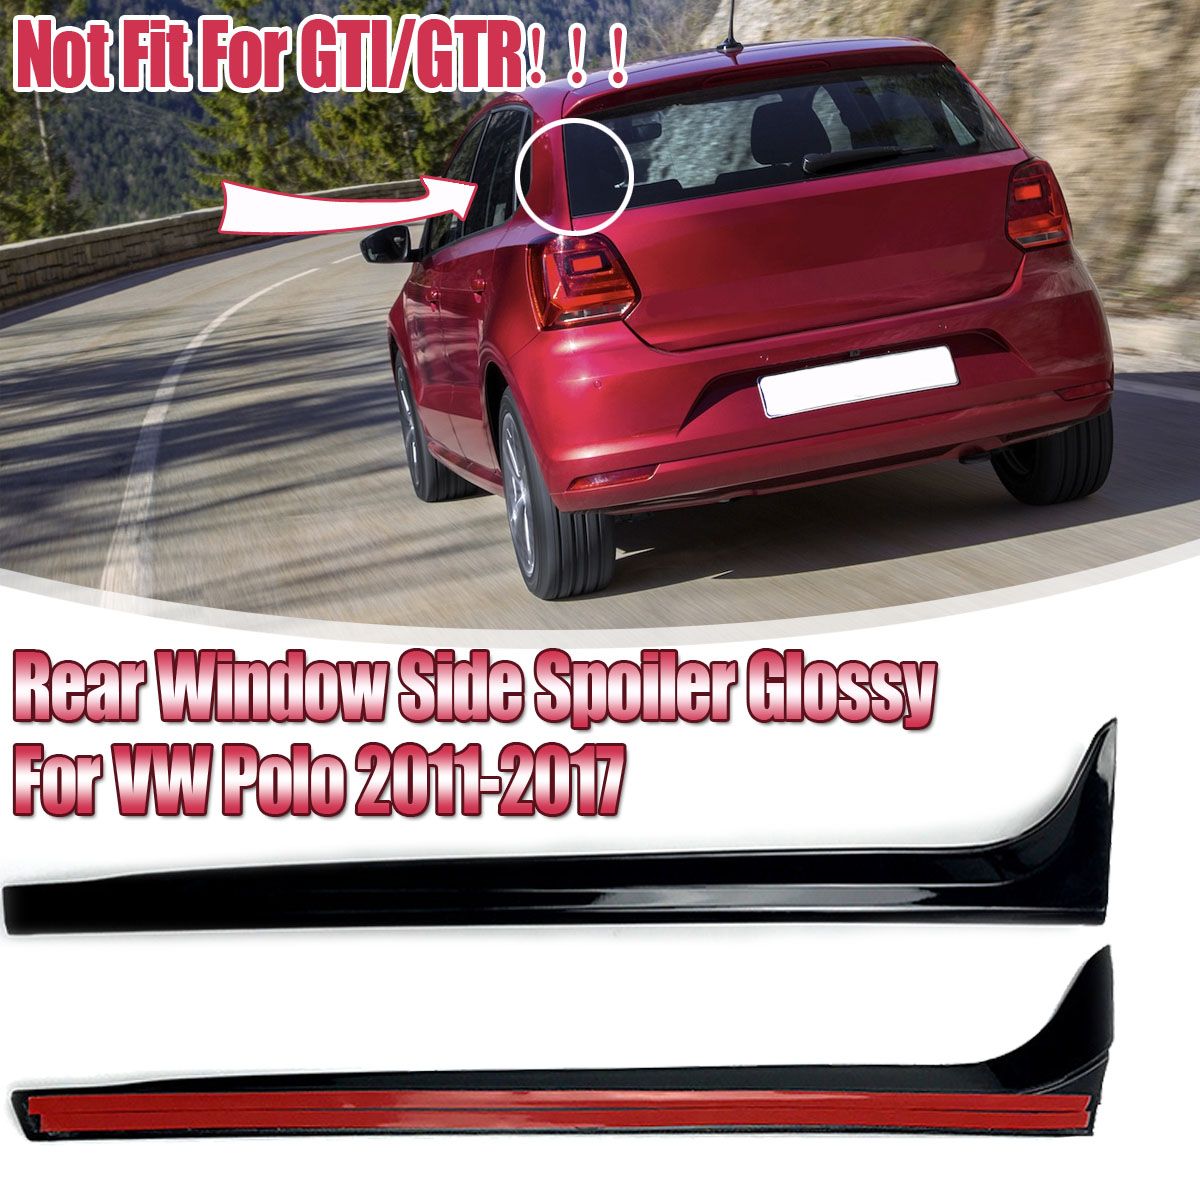 2Pcs-Car-Rear-Window-Side-Spoiler-Wing-Glossy-Canard-Canards-Splitter-For-VW-Polo-MK5-2011-2017-1615541